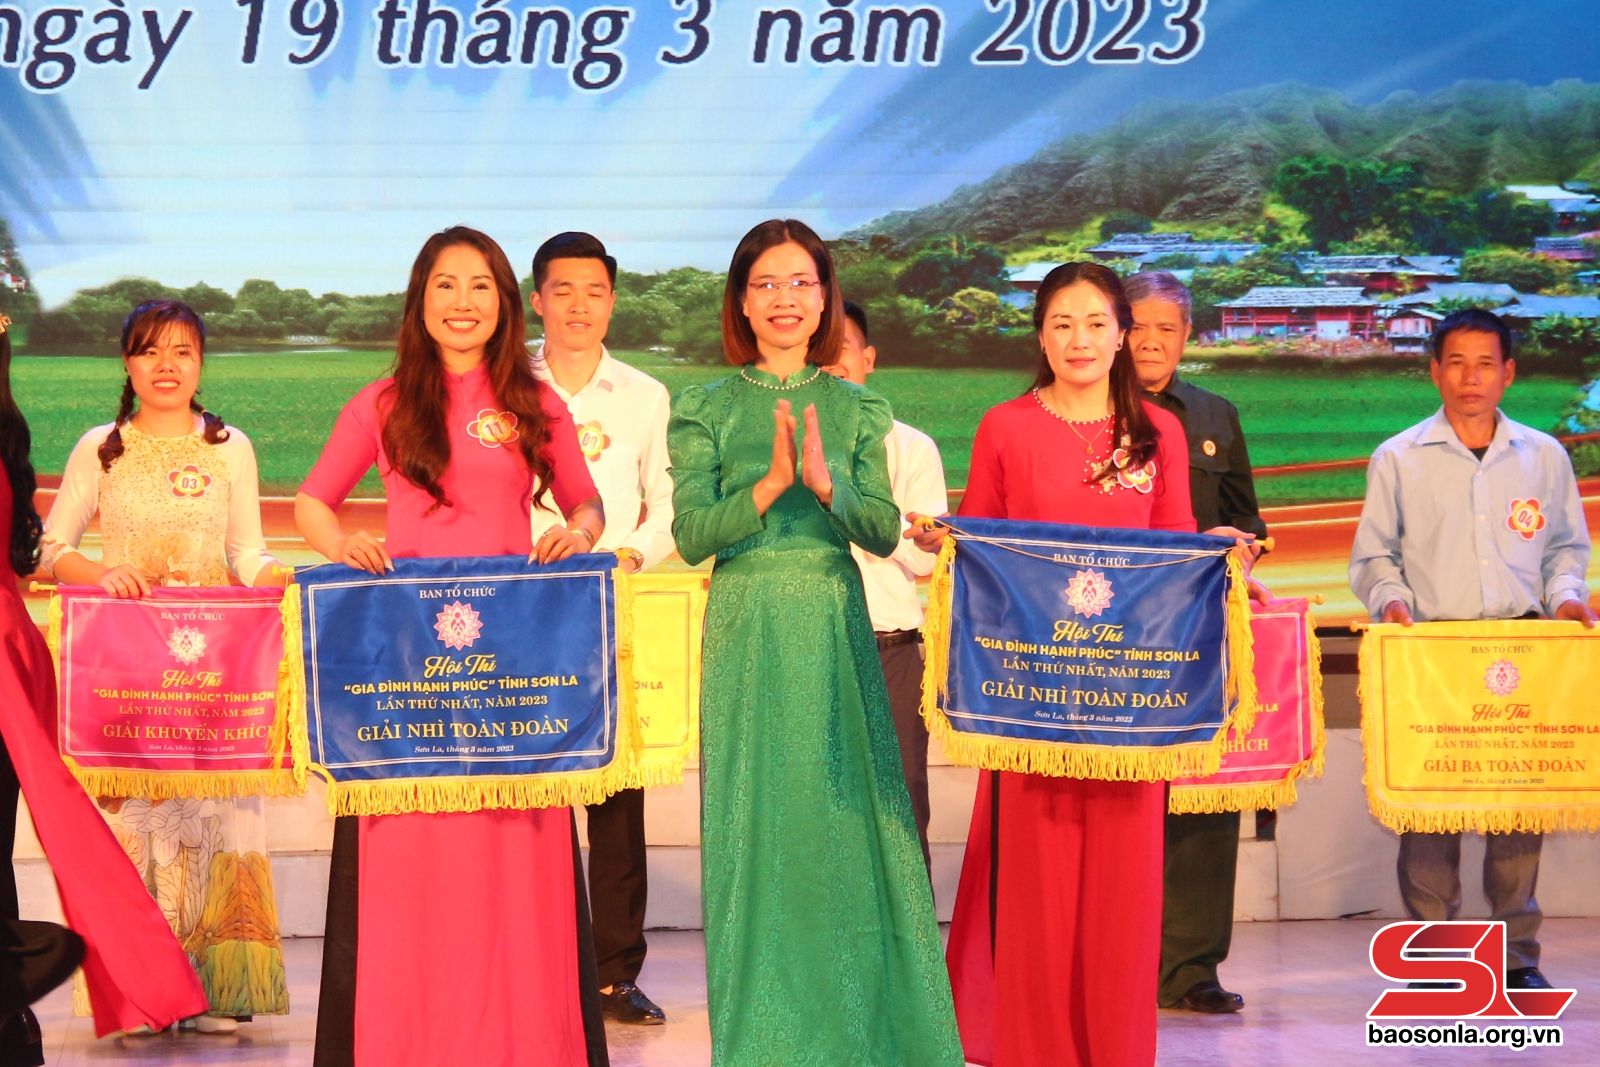 Hội thi “Gia đình hạnh phúc” tỉnh Sơn La lần thứ Nhất, năm 2023 - Ảnh 8.